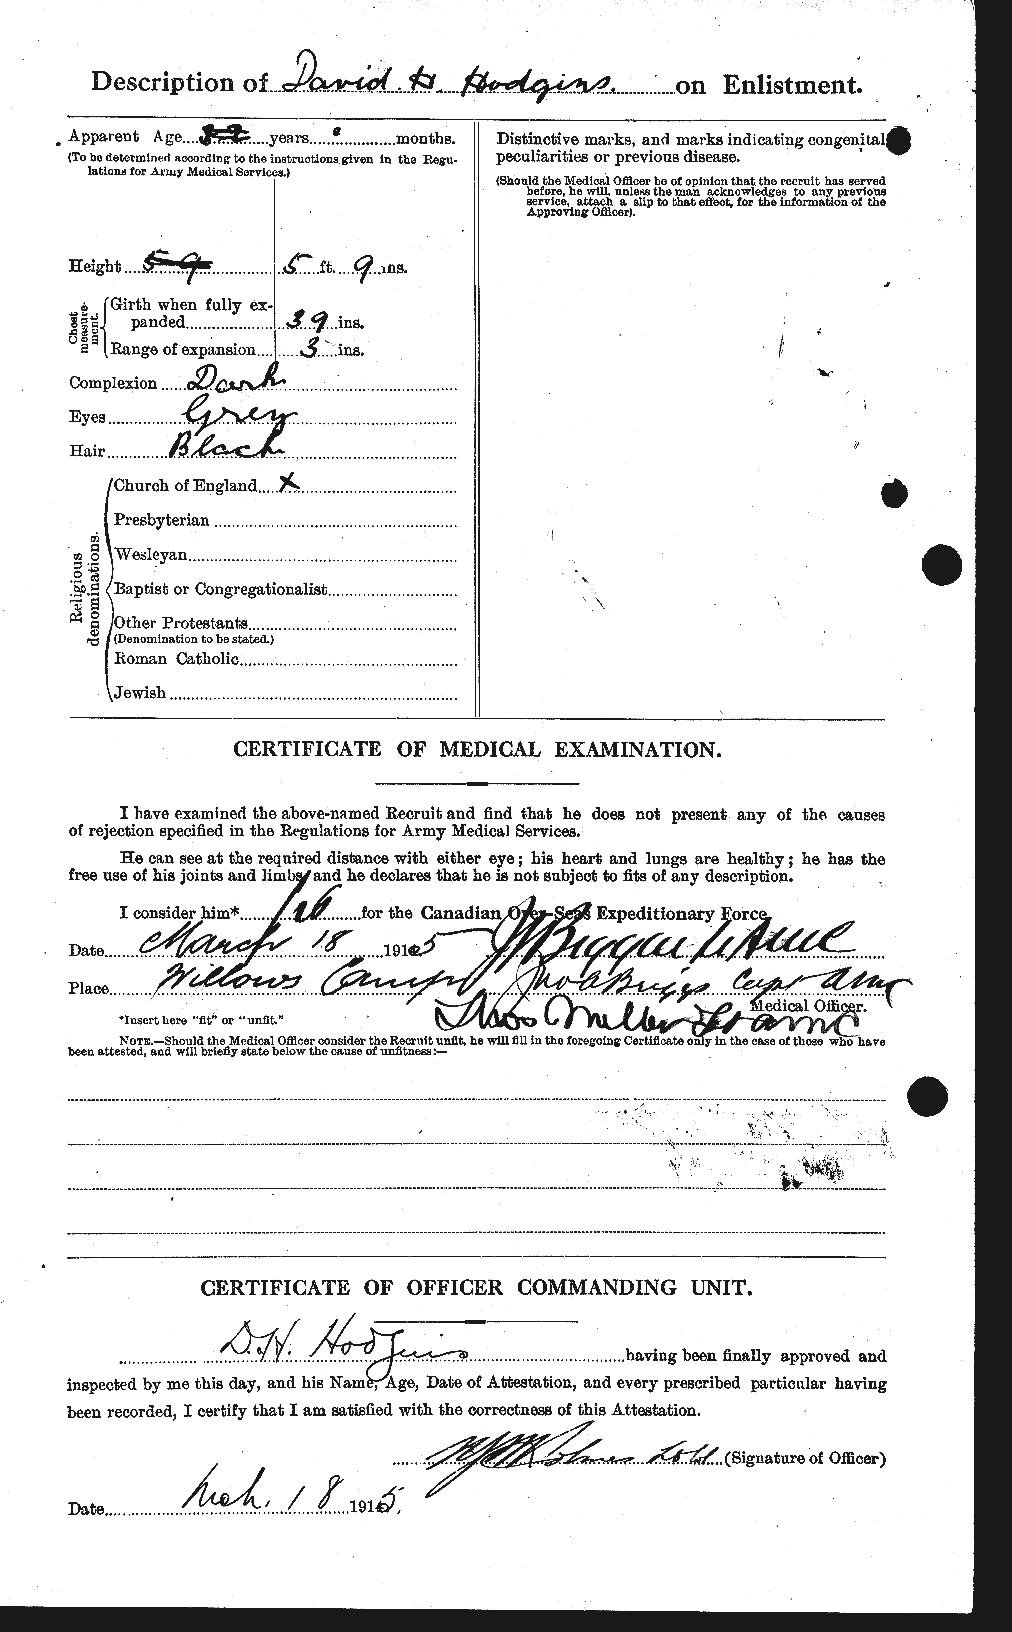 Dossiers du Personnel de la Première Guerre mondiale - CEC 395209b